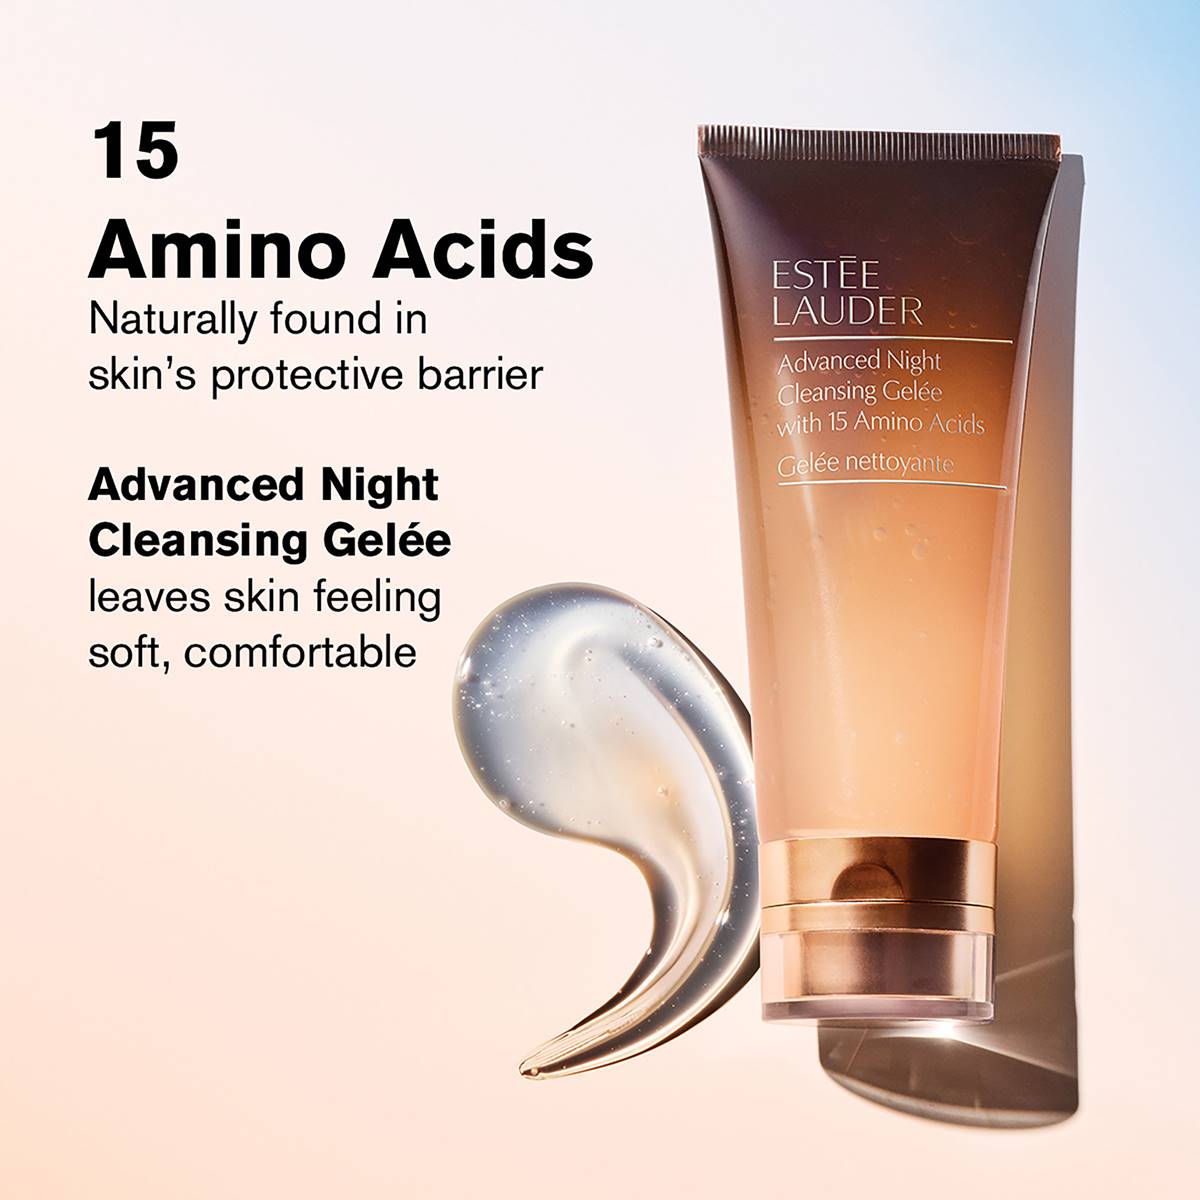 Estee Lauder(tm) Advanced Night Cleansing Gelee W/15 Amino Acids